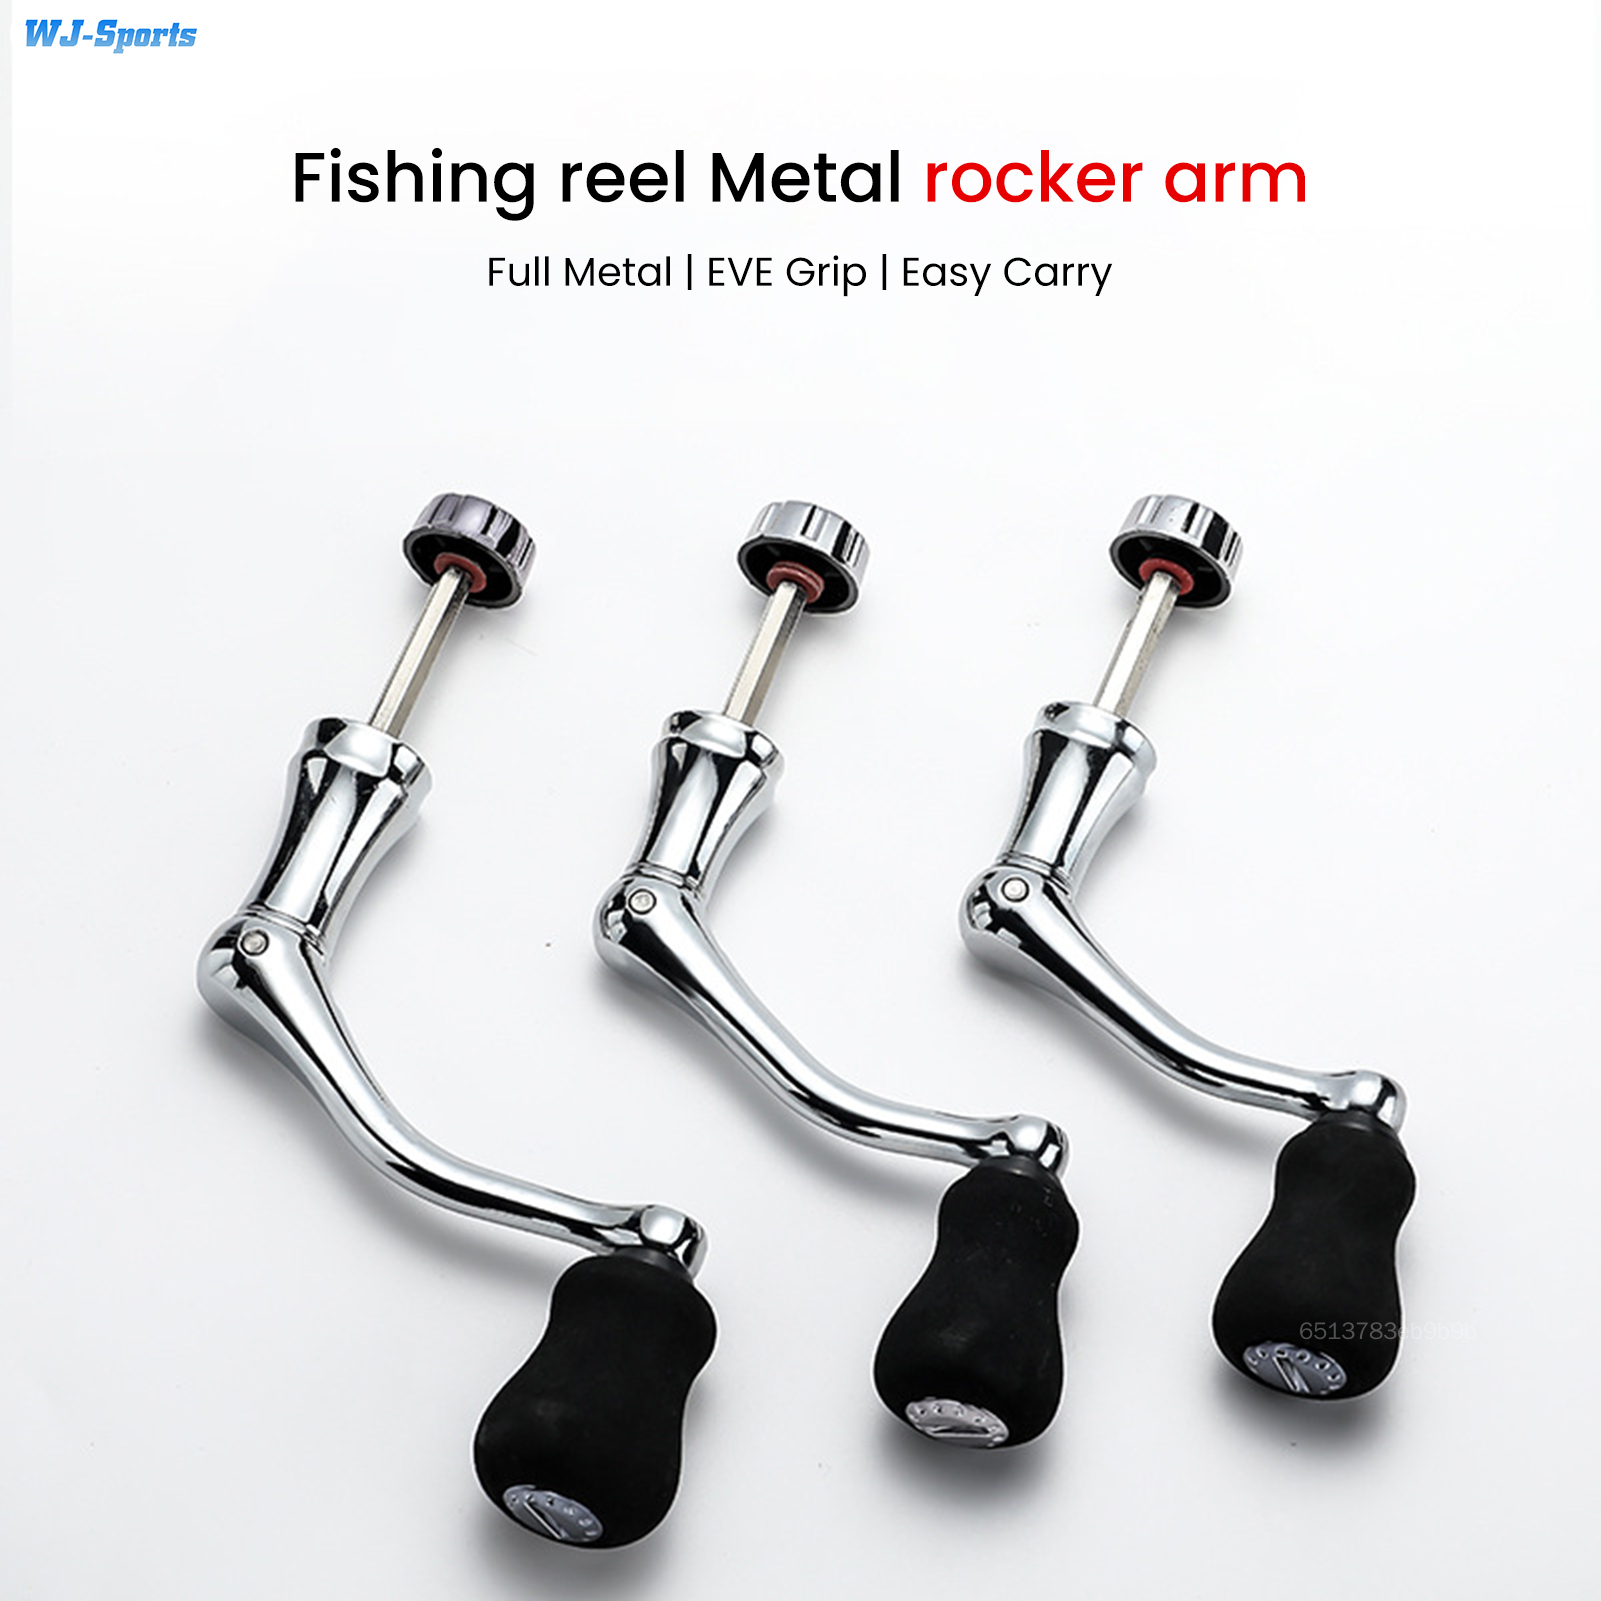 Sea Rod Handle Fishing Reel Accessories Fishing Reel Metal Rocker